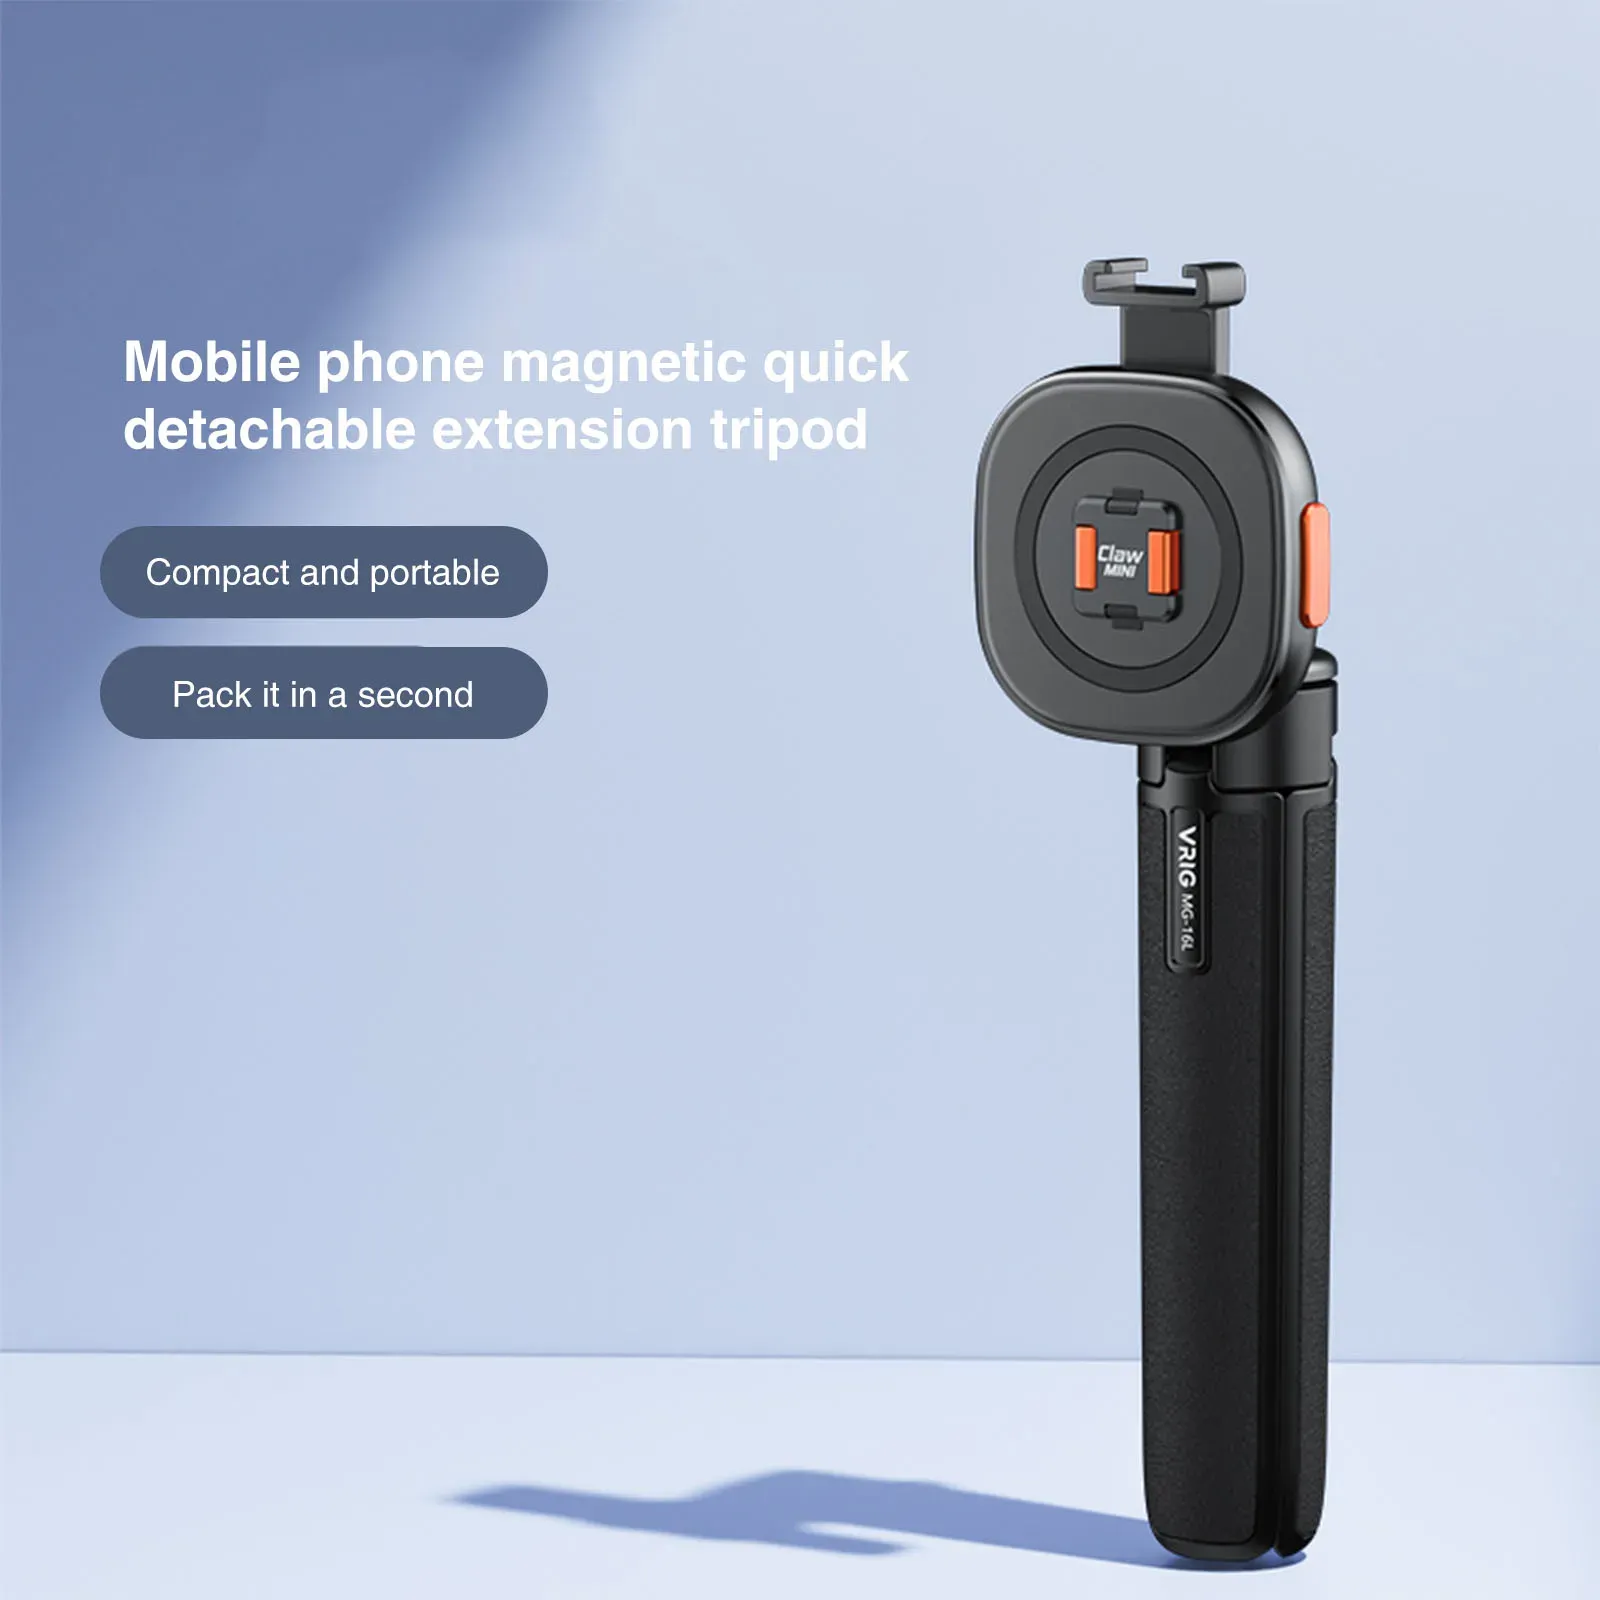 Treppiedi Uurig vrig MG16L Tripode selfie stick per autole per cellulare stand di rilascio rapido mini vivi vlog treppiede esteso